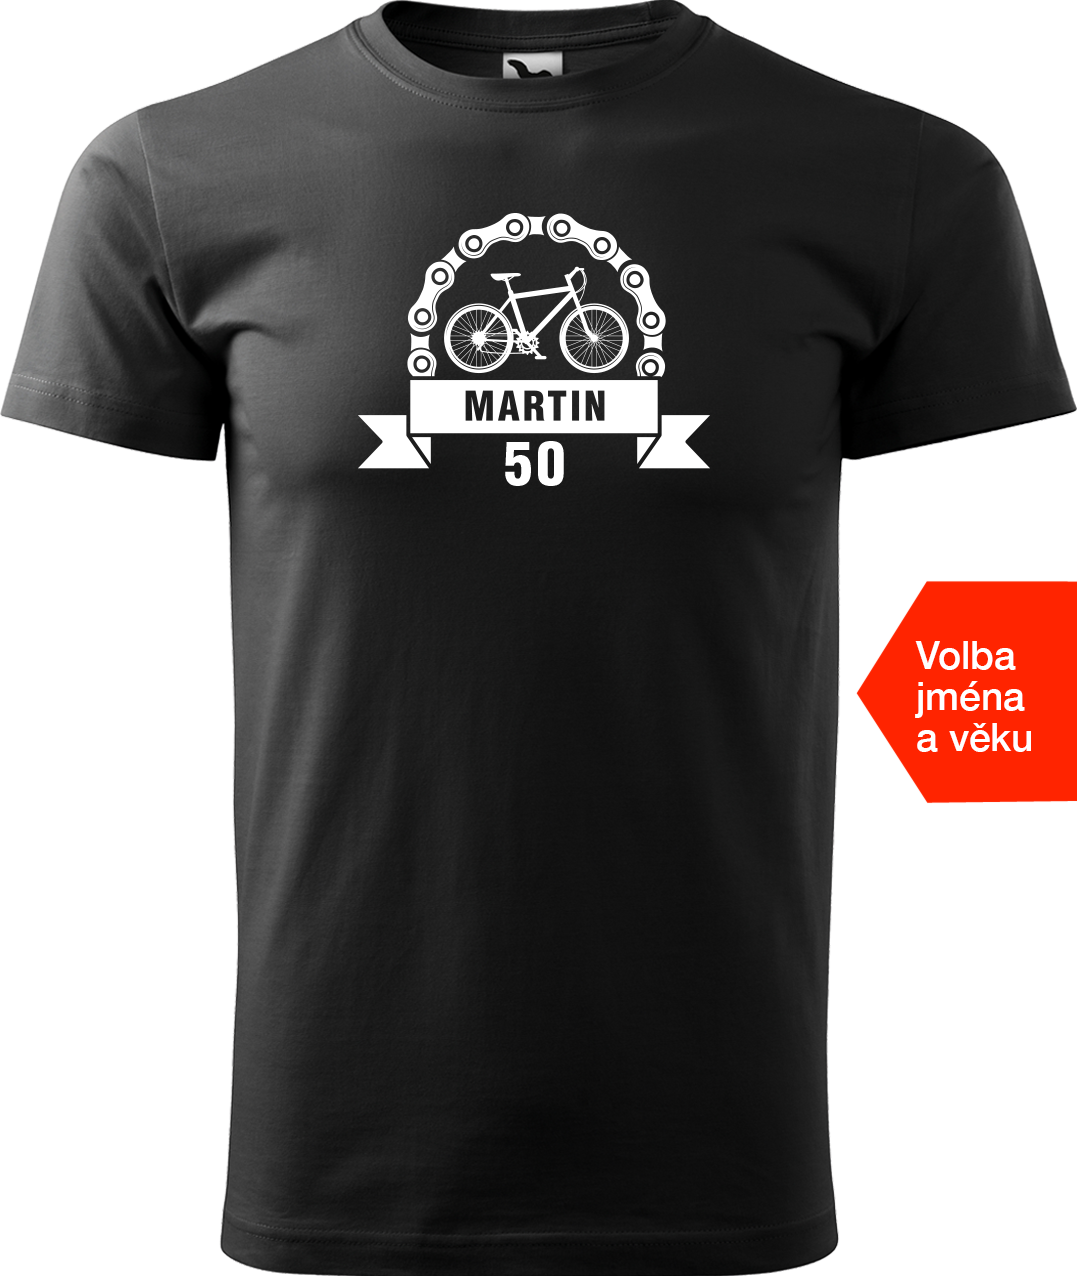 Pánské tričko pro cyklistu se jménem a věkem - Blahopřání Velikost: XL, Barva: Černá (01)